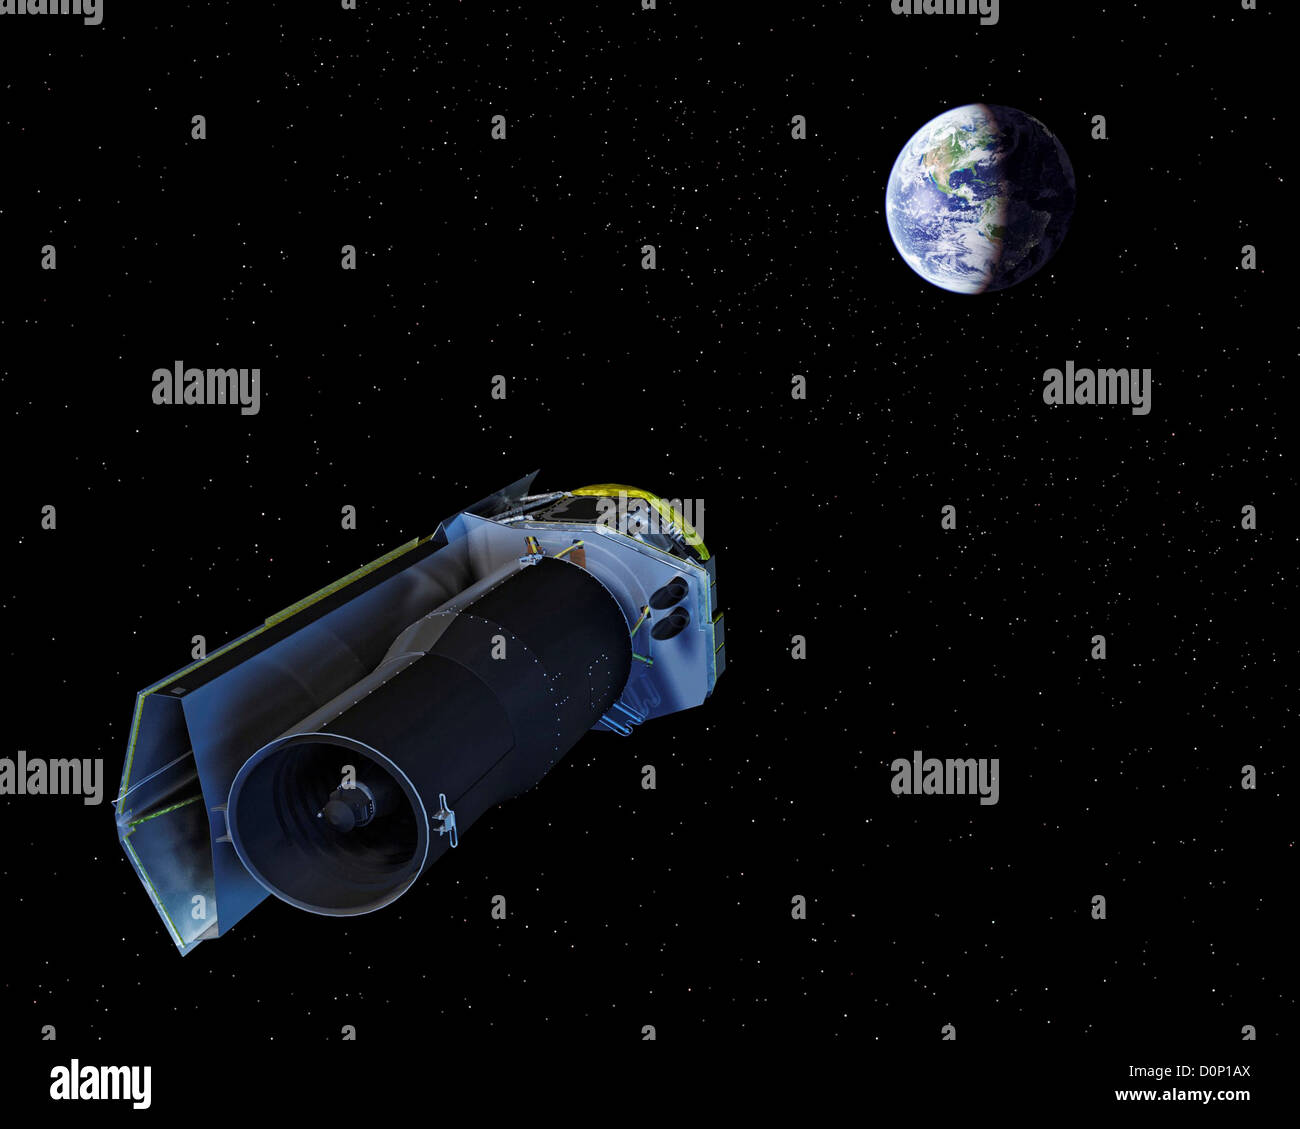 Telescopio spaziale Spitzer Foto Stock